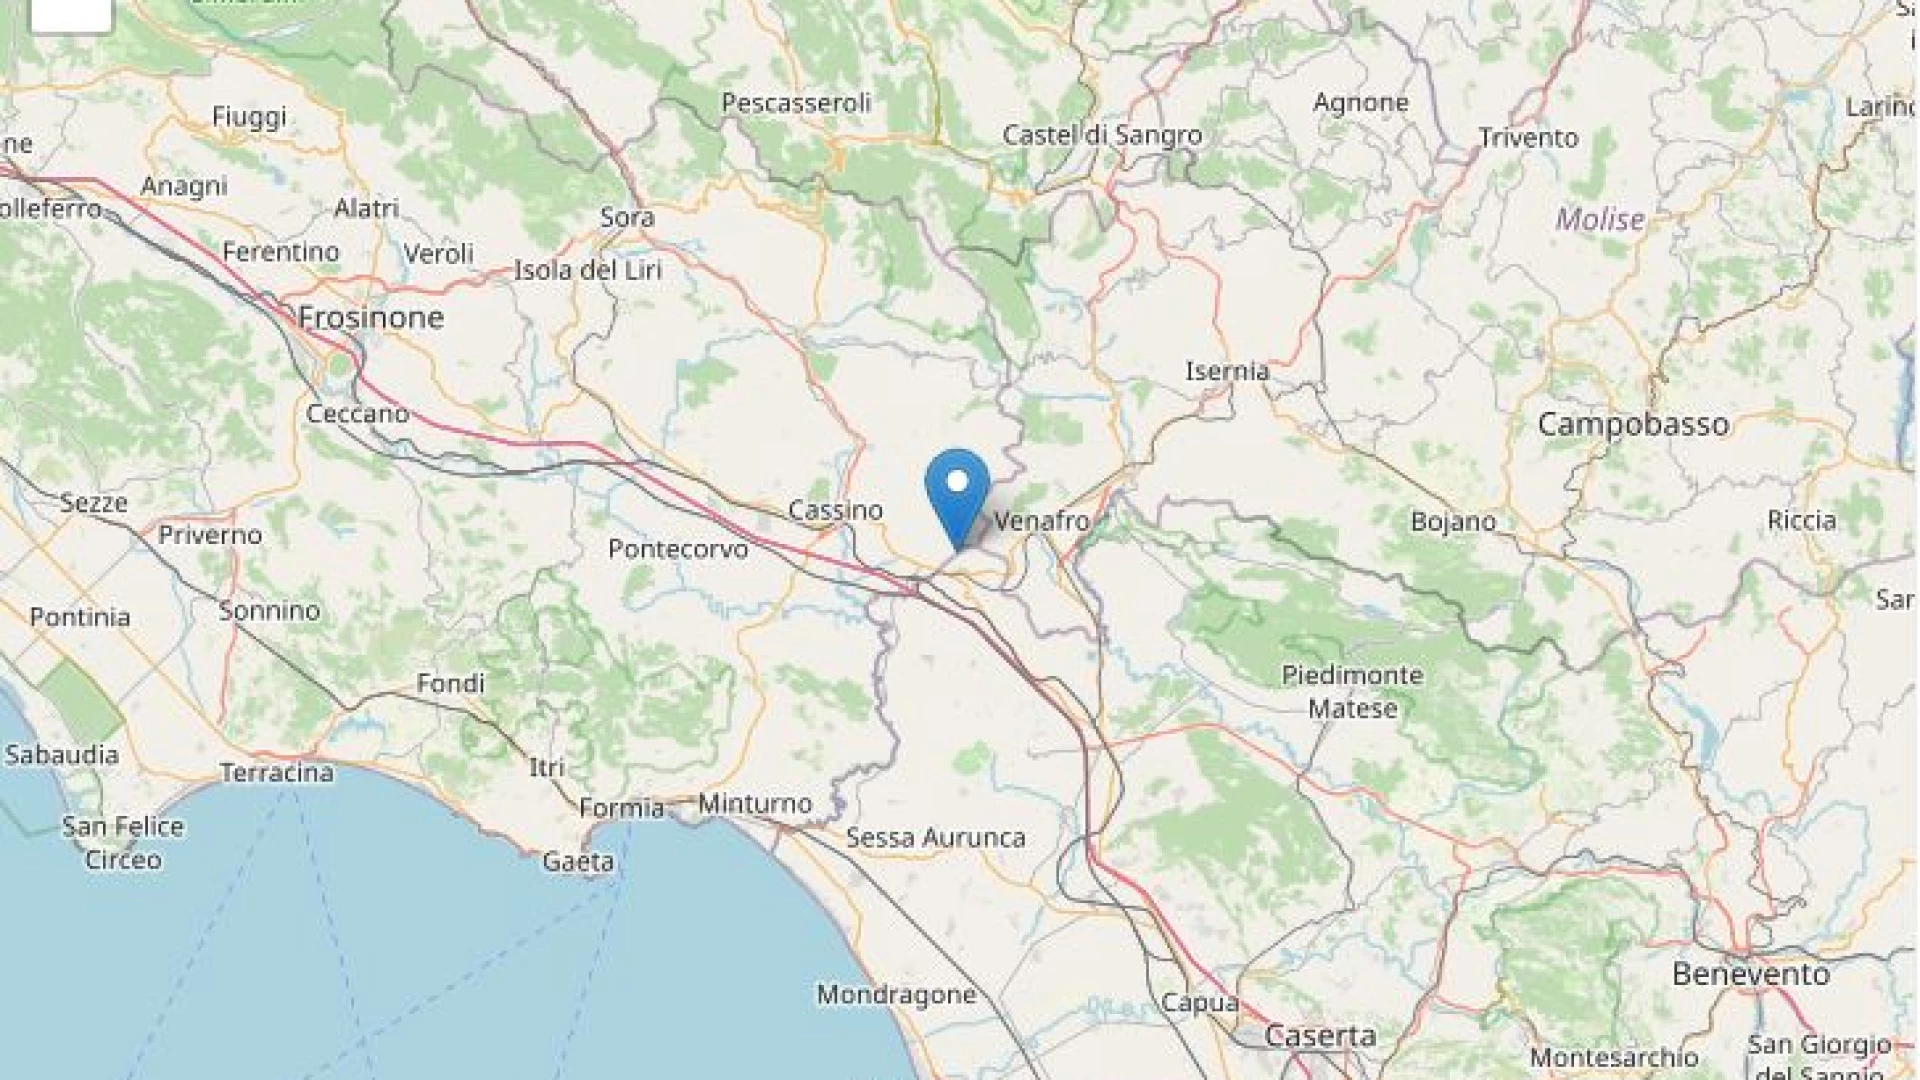 Scossa di terremoto tra Campania e Lazio. Epicentro a San Pietro Infine con magnitudo 3.5. Sisma avvertito anche in Molise.